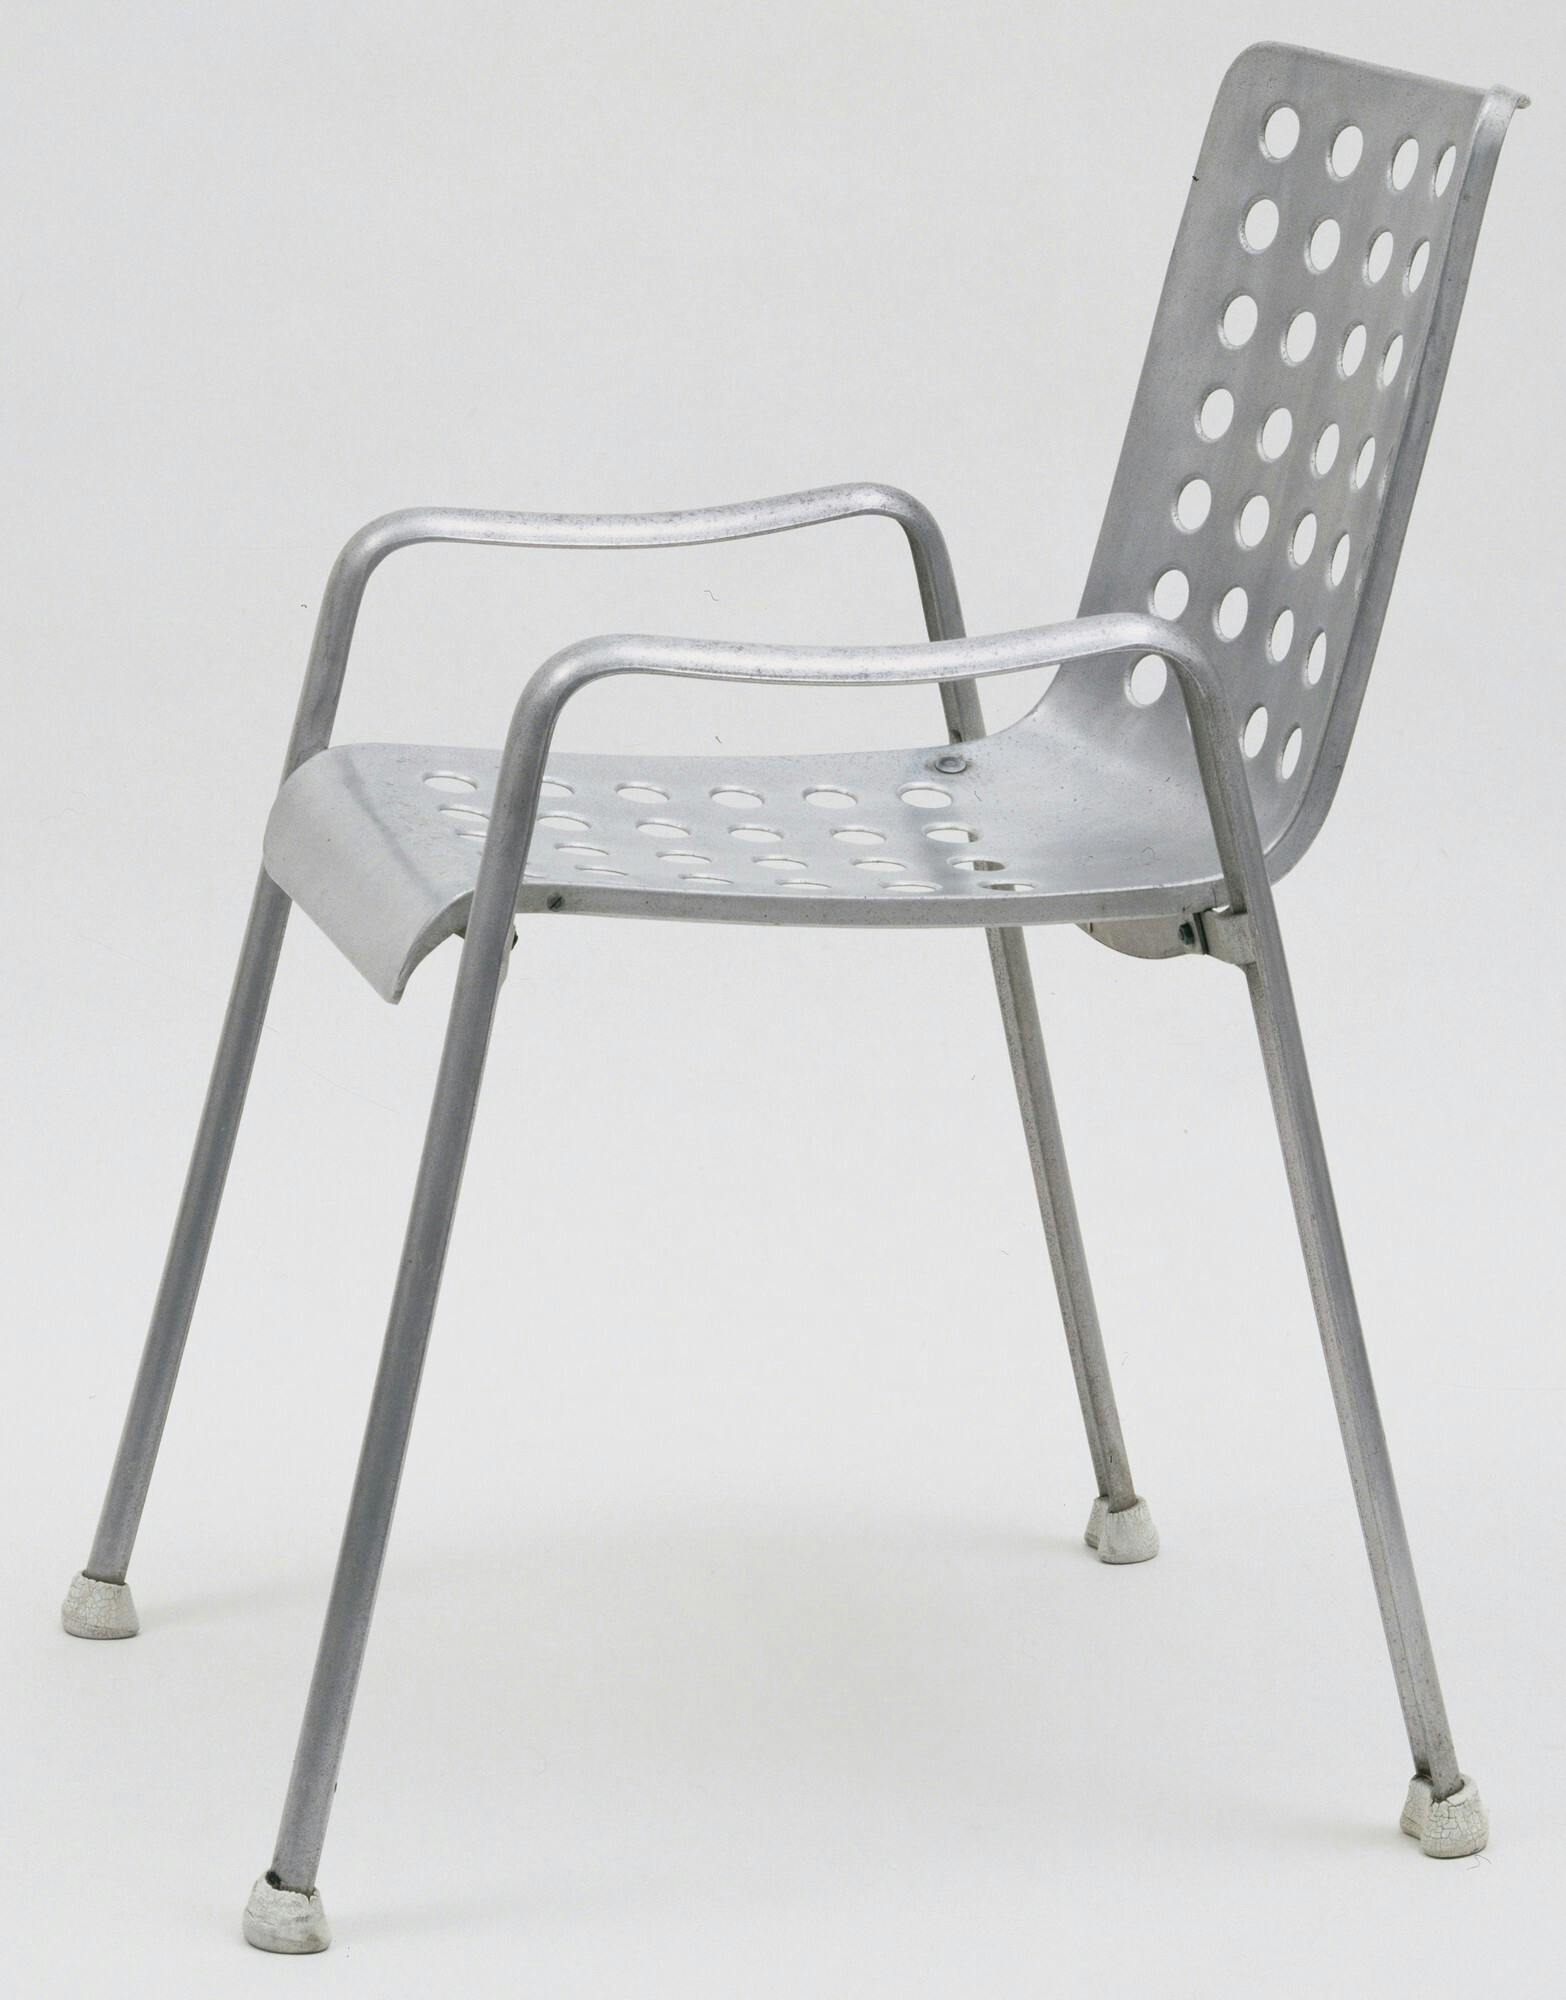 La silla Landi ocupa un lugar importante en la historia del diseño del siglo XX.